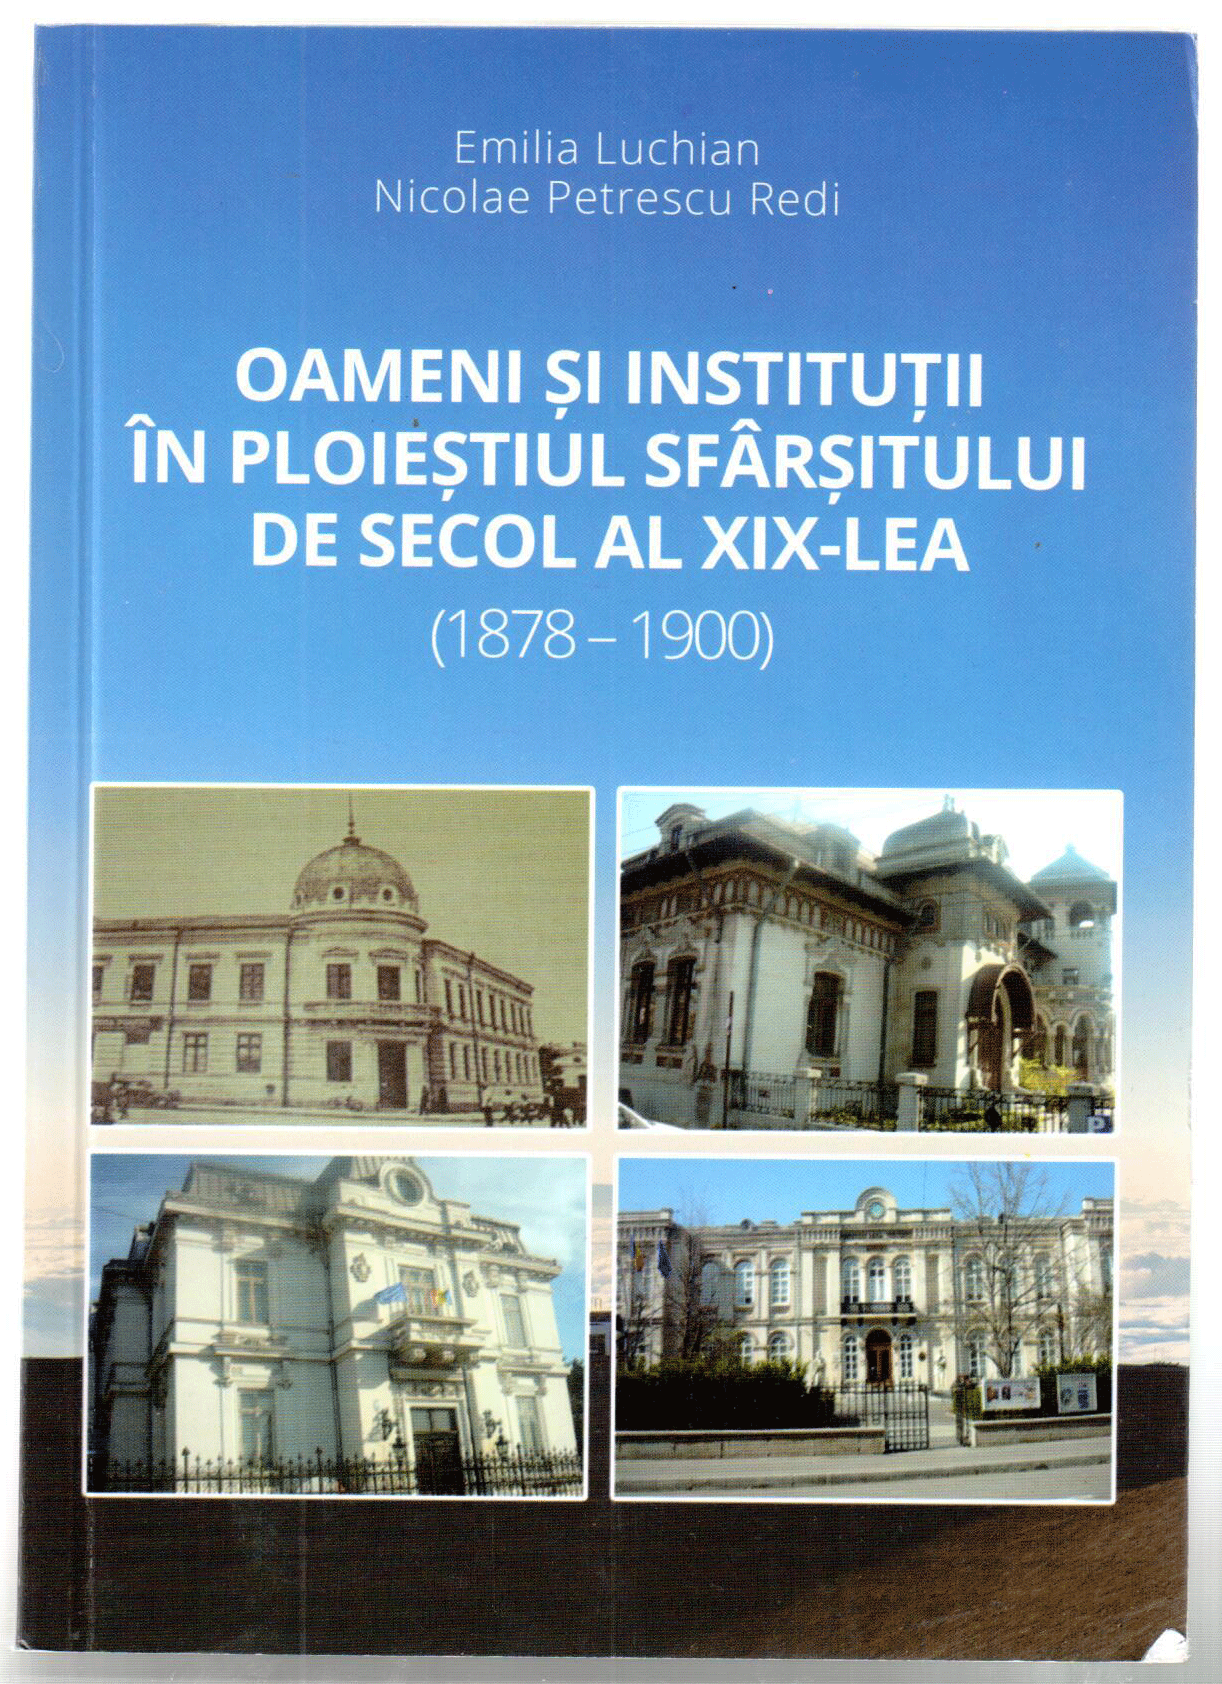 Oameni si institutii in Ploiestiul sfarsitului de secol al XIX-lea (1878-1900)